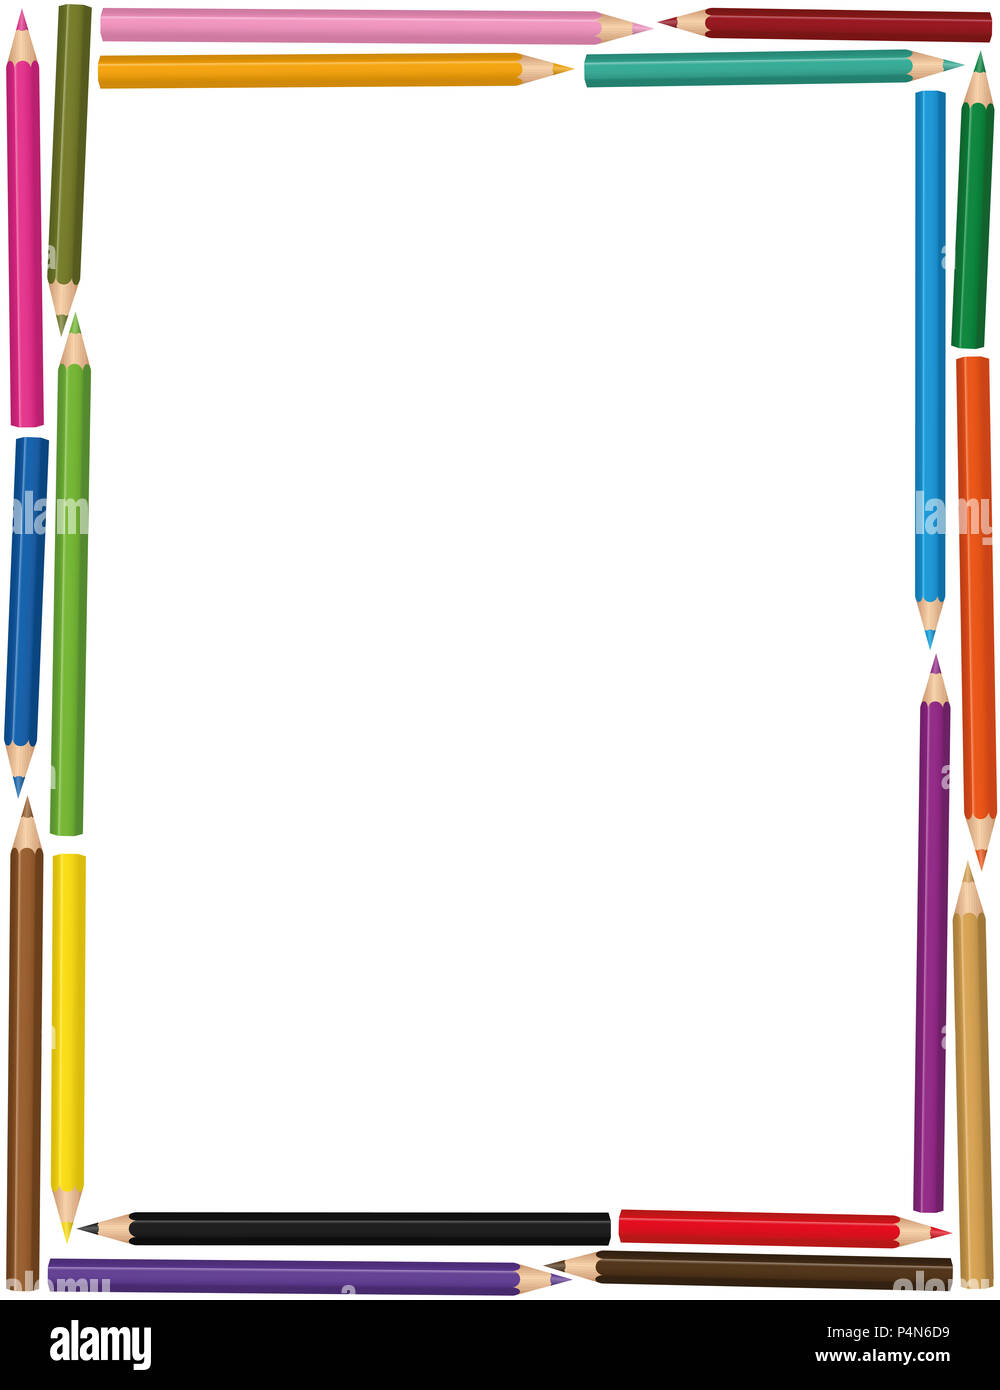 Bunte vertikale Buntstifte Rahmen mit lose angeordnete Farbe Bleistift set-Abbildung auf weißen Hintergrund. Stockfoto